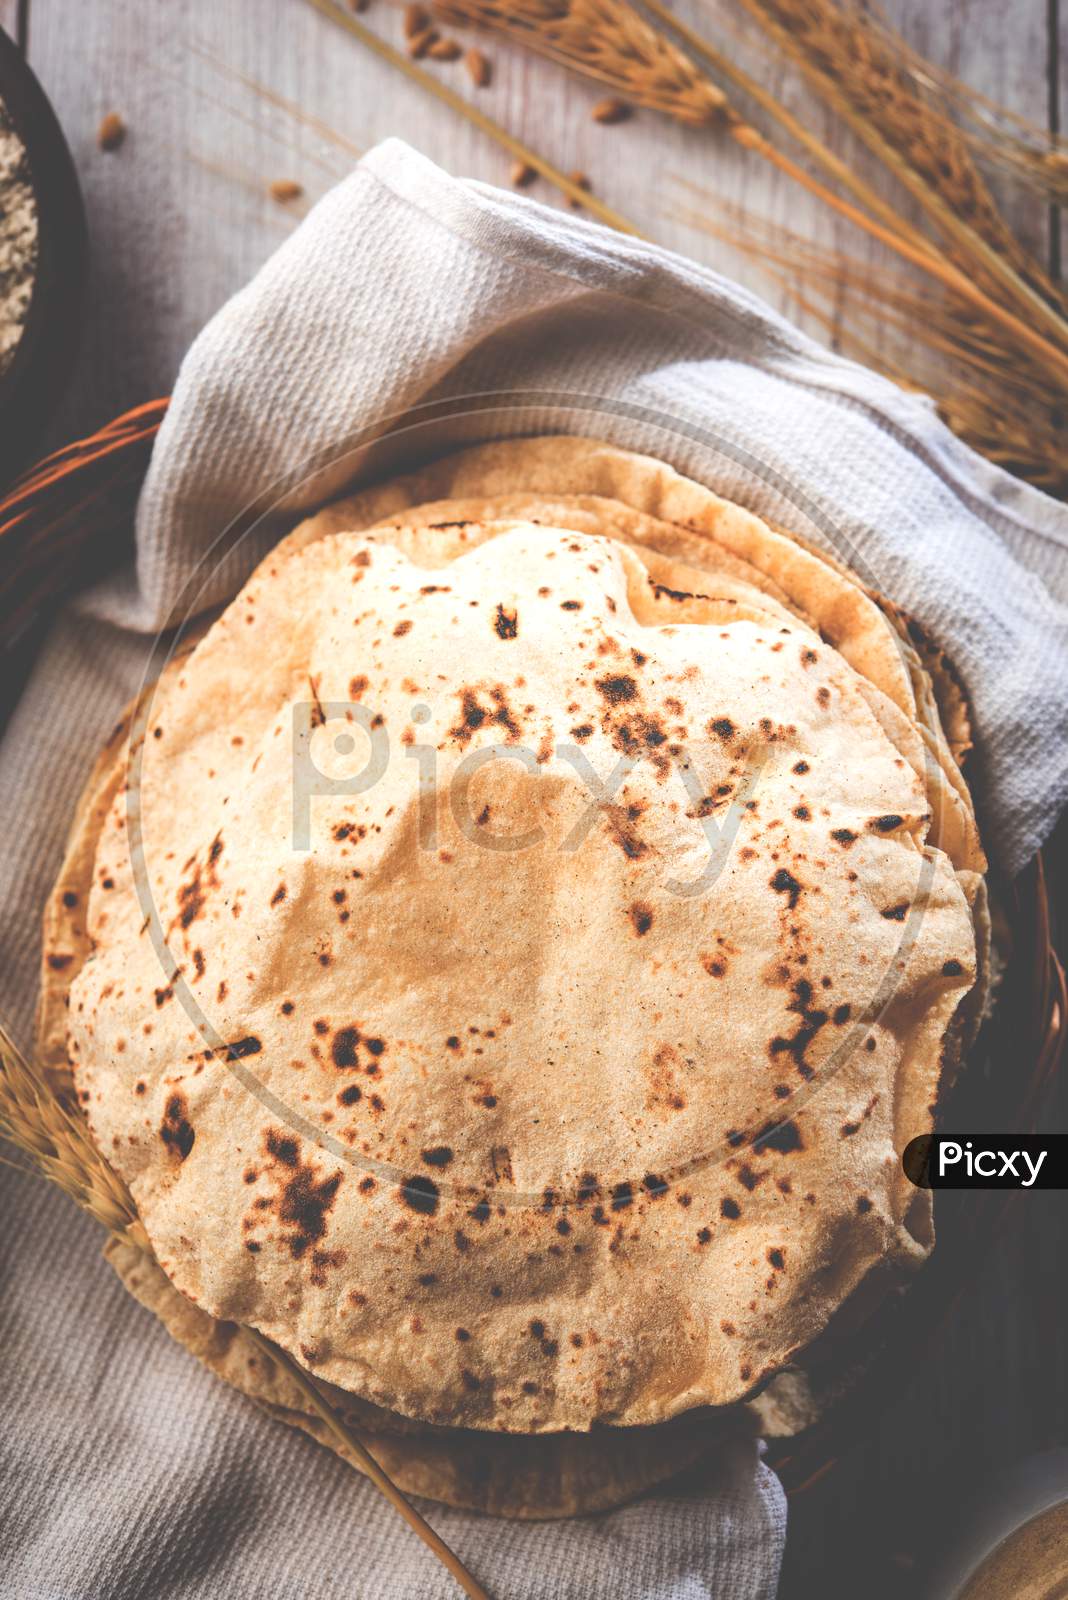 Indian bread / Chapati / Fulka / Gehu Roti